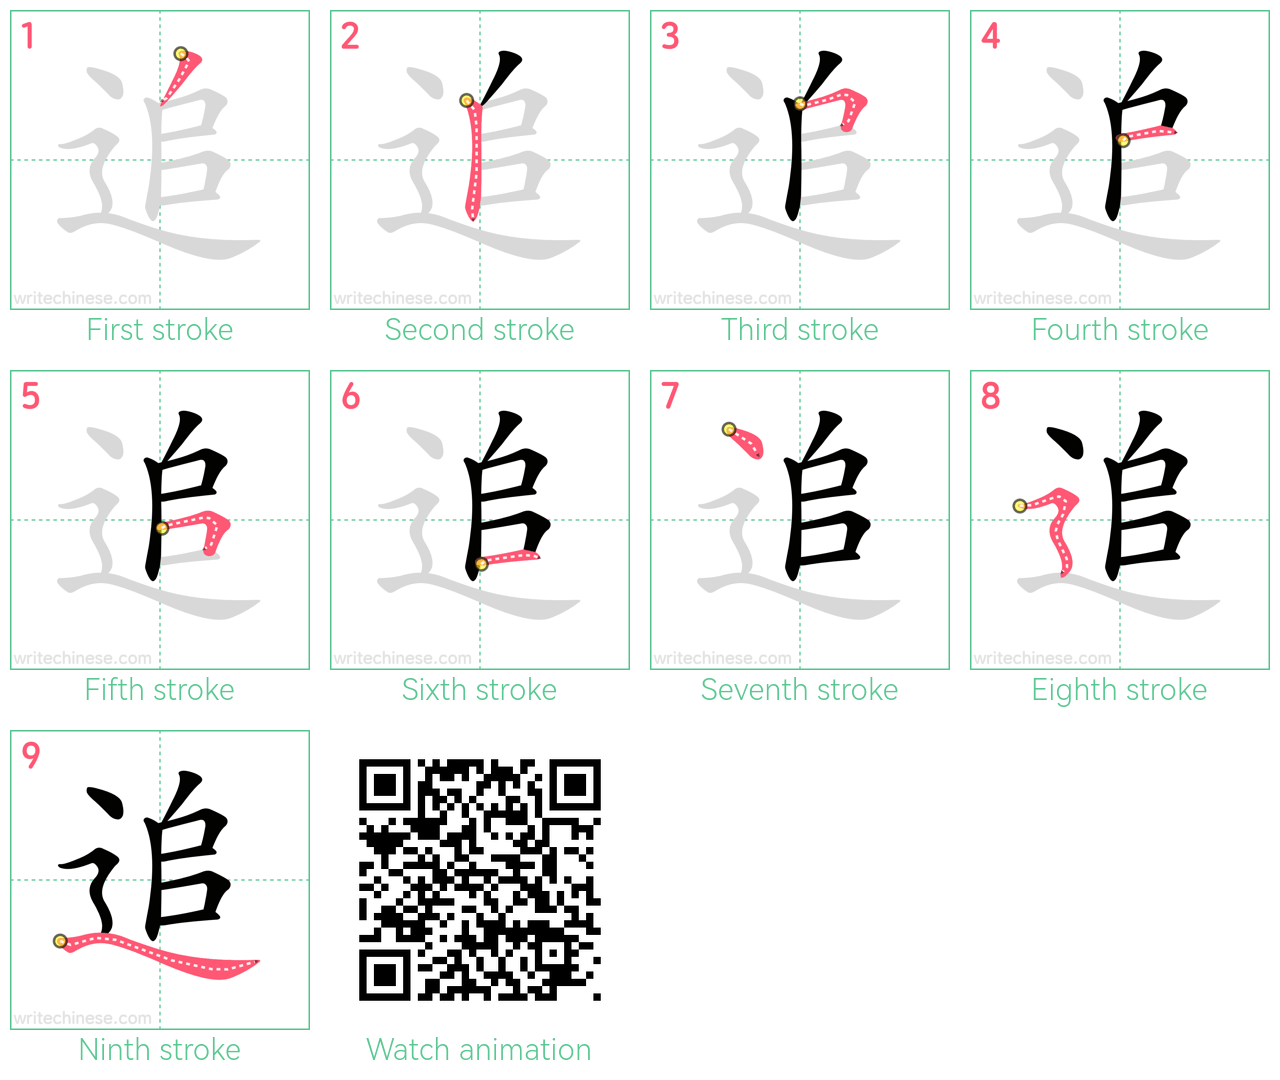 追 step-by-step stroke order diagrams